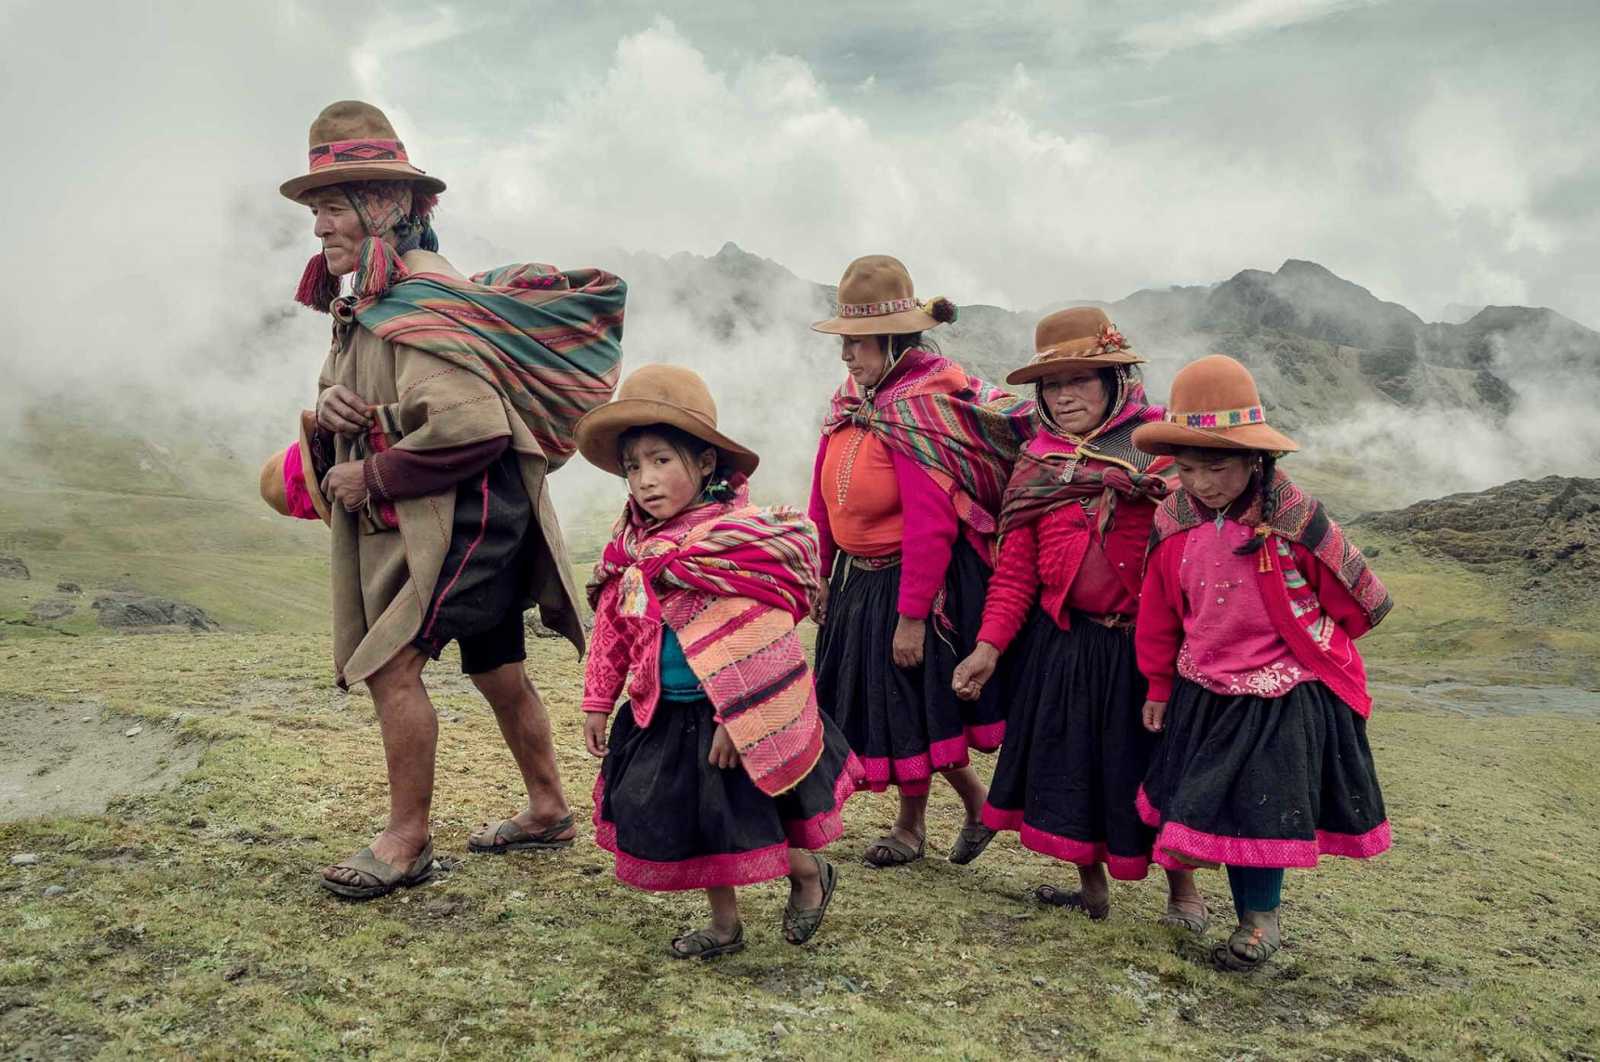 The community of Q'eros is the last Inca community